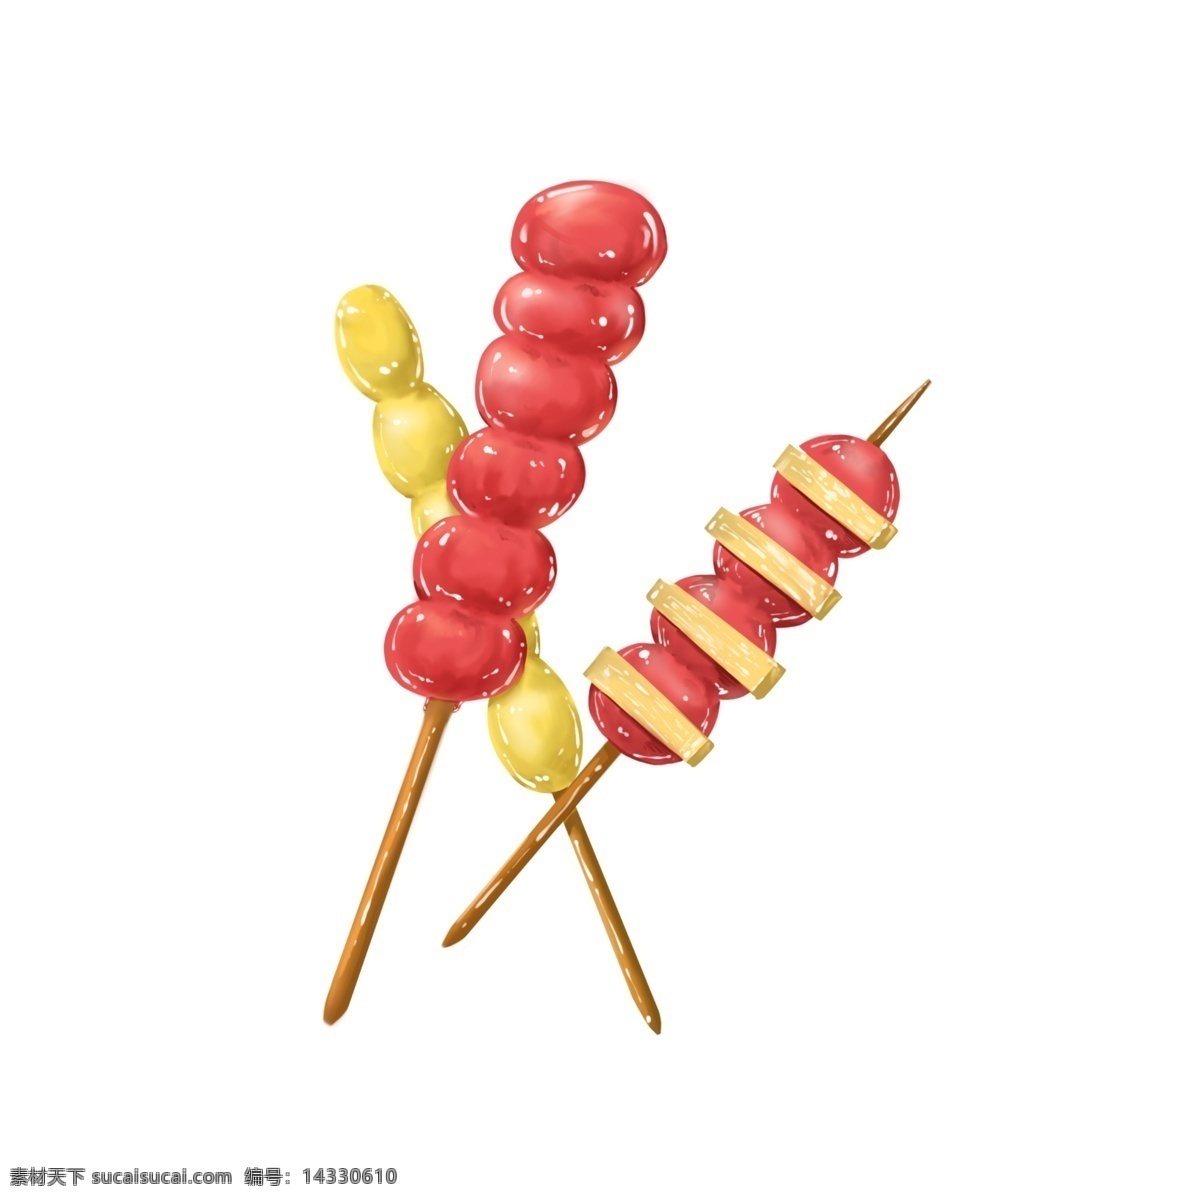 红色 糖葫芦 插画 红色的糖葫芦 漂亮的糖葫芦 创意糖葫芦 美味的糖葫芦 甜甜的糖葫芦 糖葫芦插画